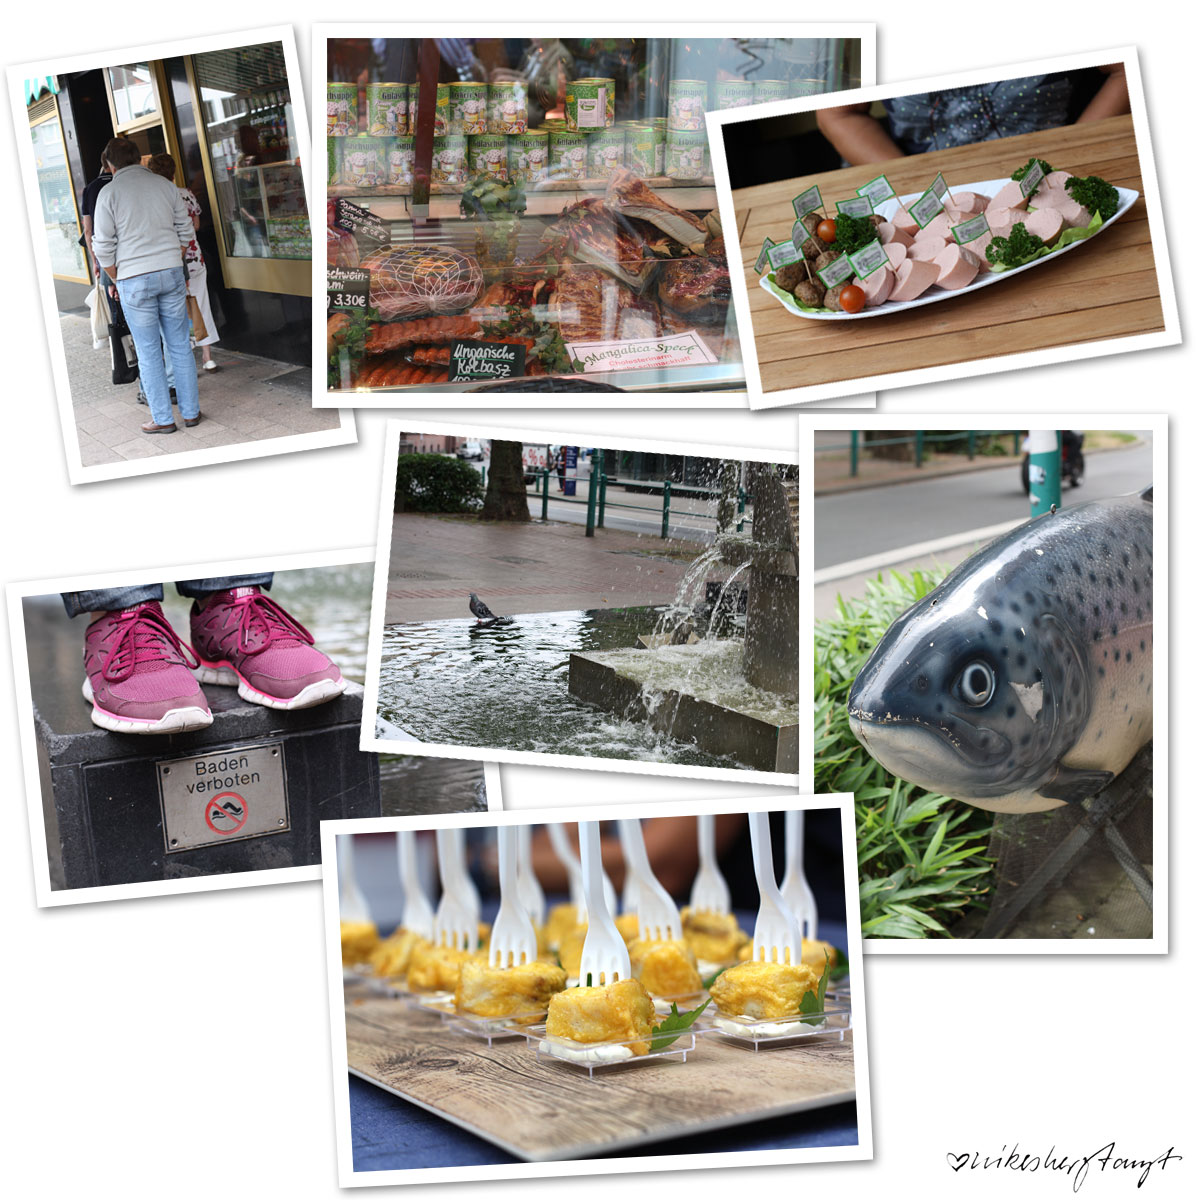 eat the world, kulinarisch-kulturelle stadtführungen, duisburg, ruhrgebiet, #nikeunterwegs, foodtour, blog, nikesherztanzt, culture and food